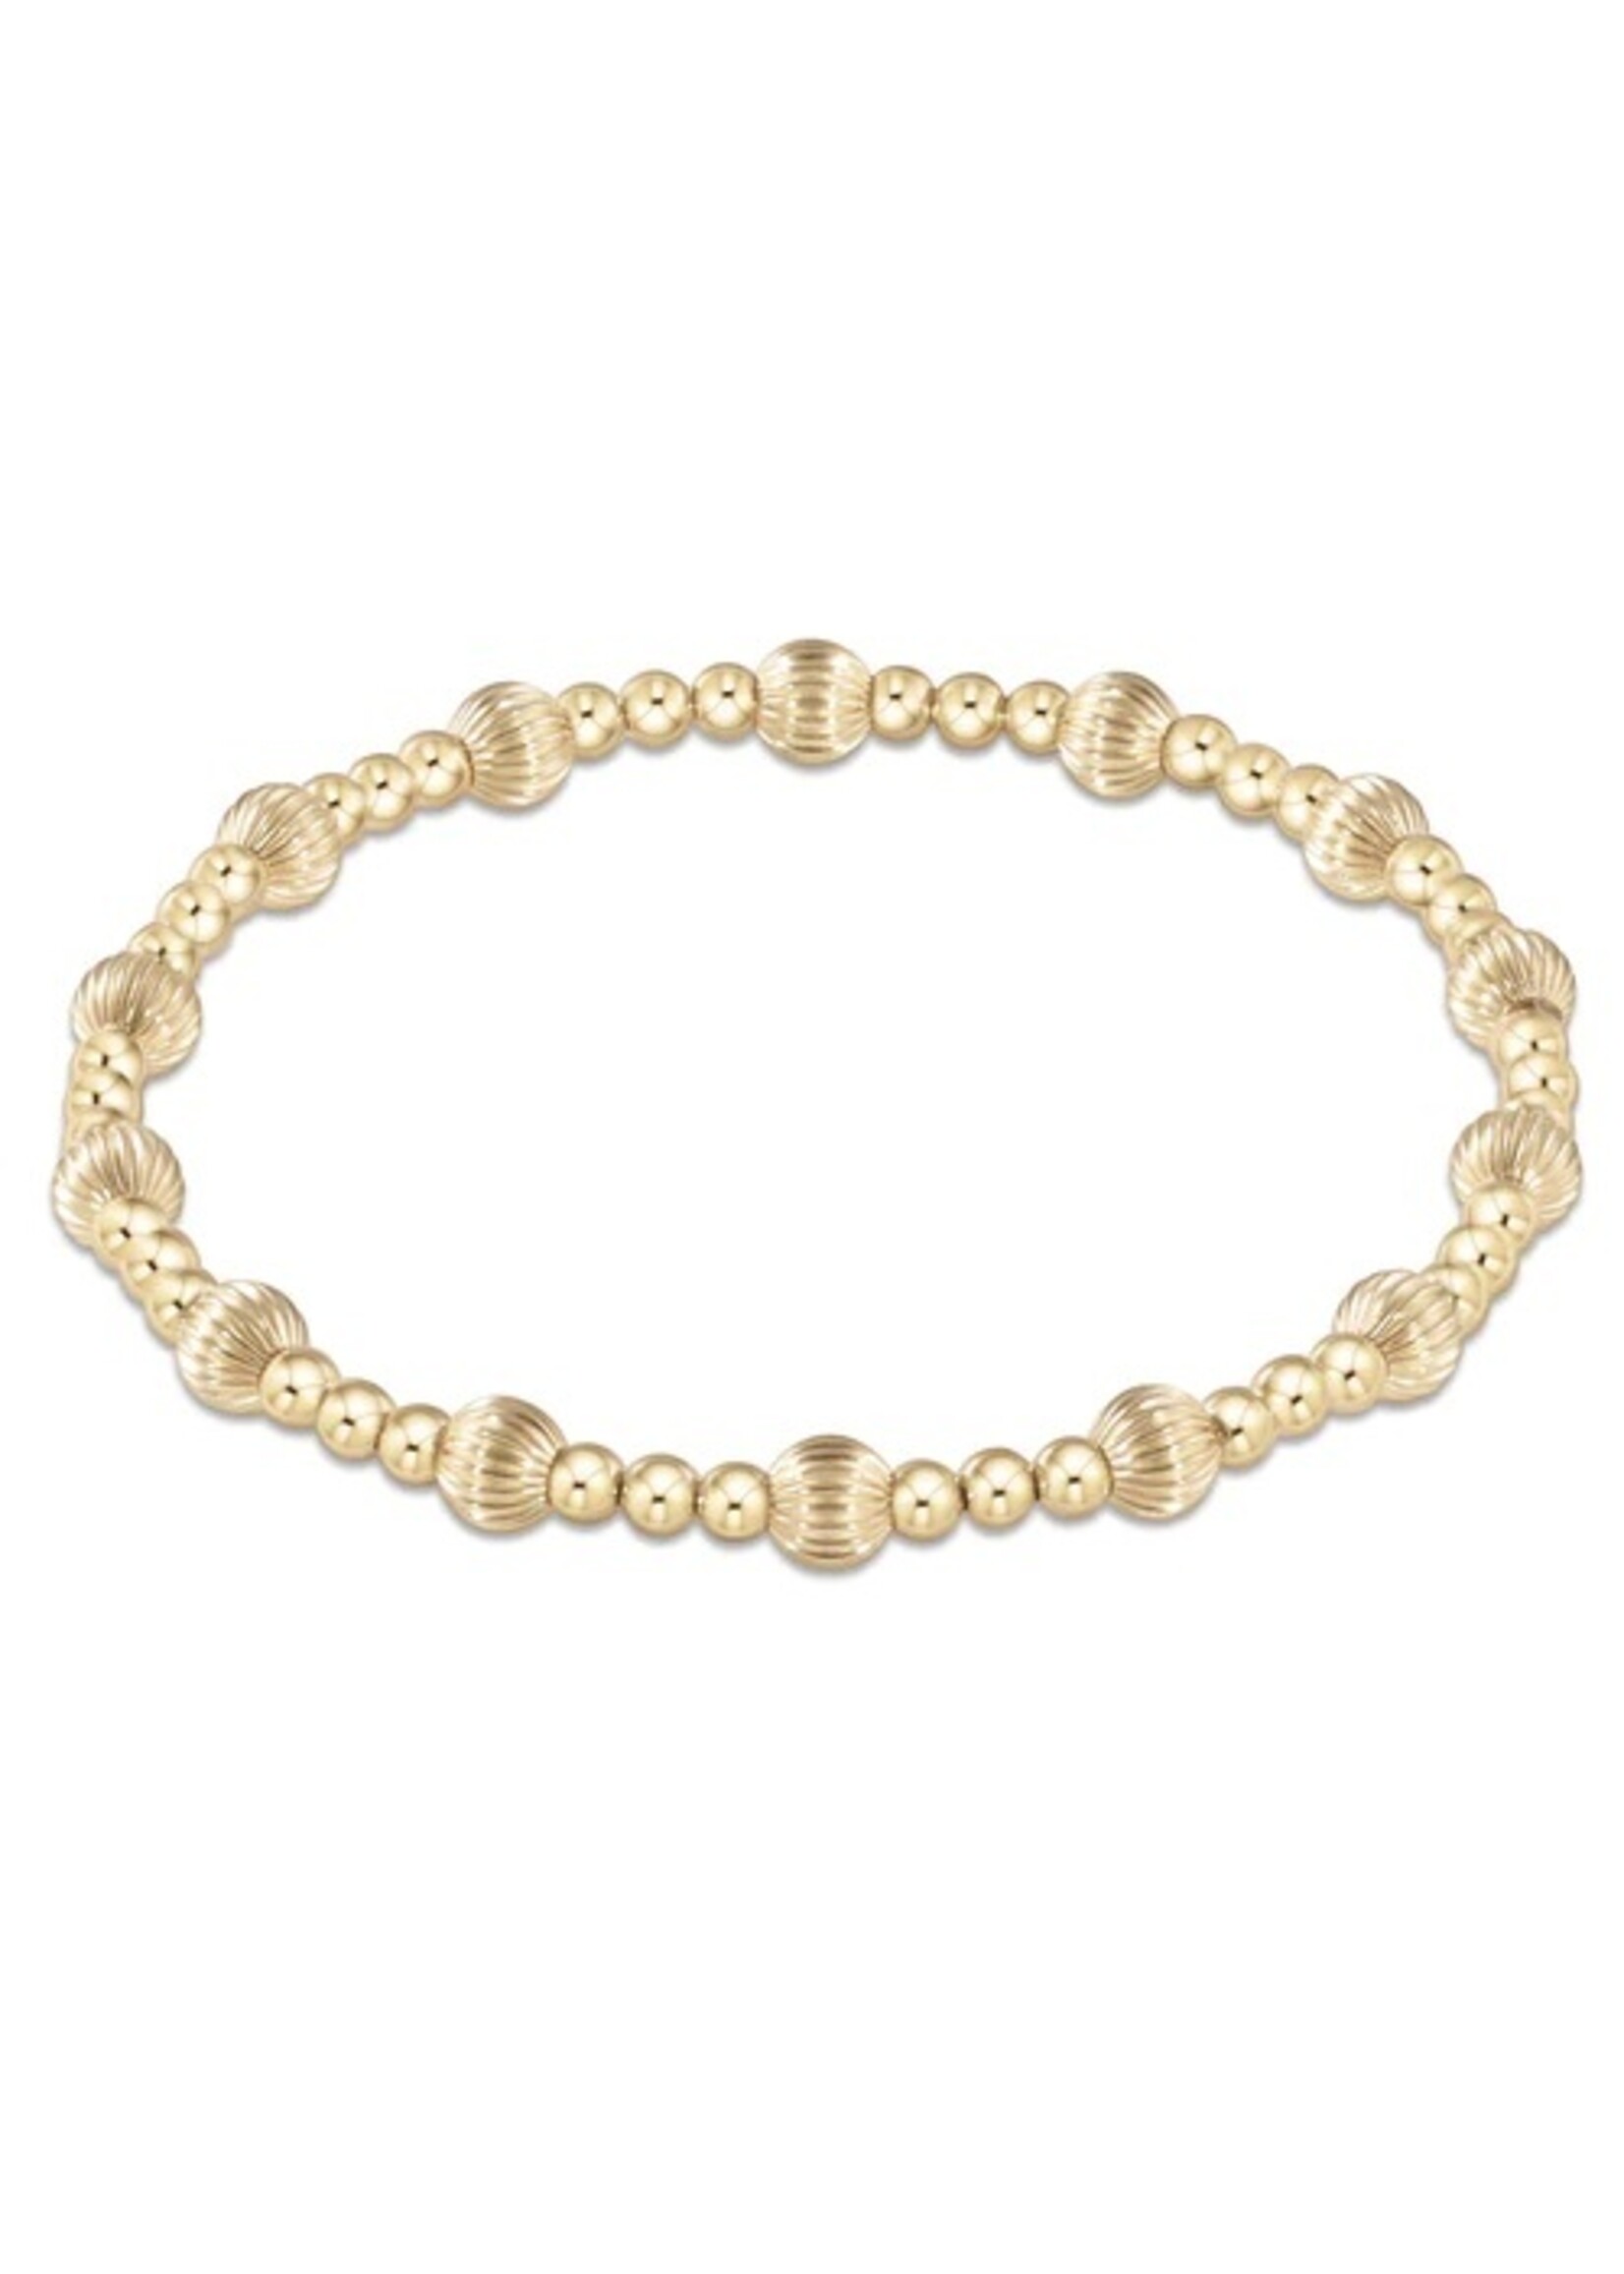 enewton Dignity Sincerity Pattern 5mm Bead Bracelet - Gold